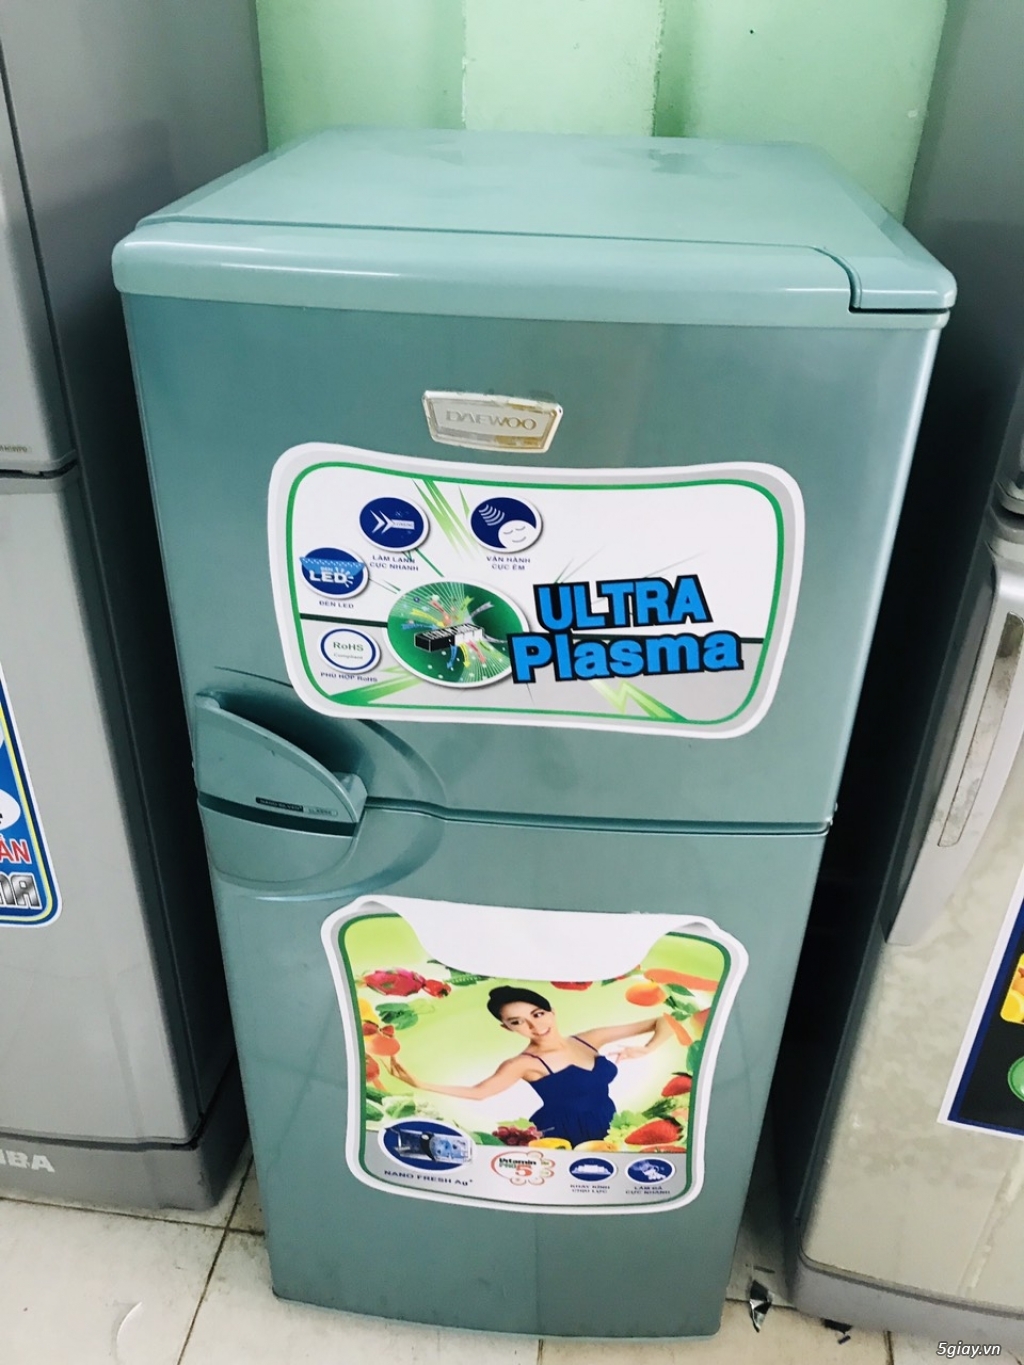 Bán tủ lạnh Dawoo _ 150l _ màu xanh - 1